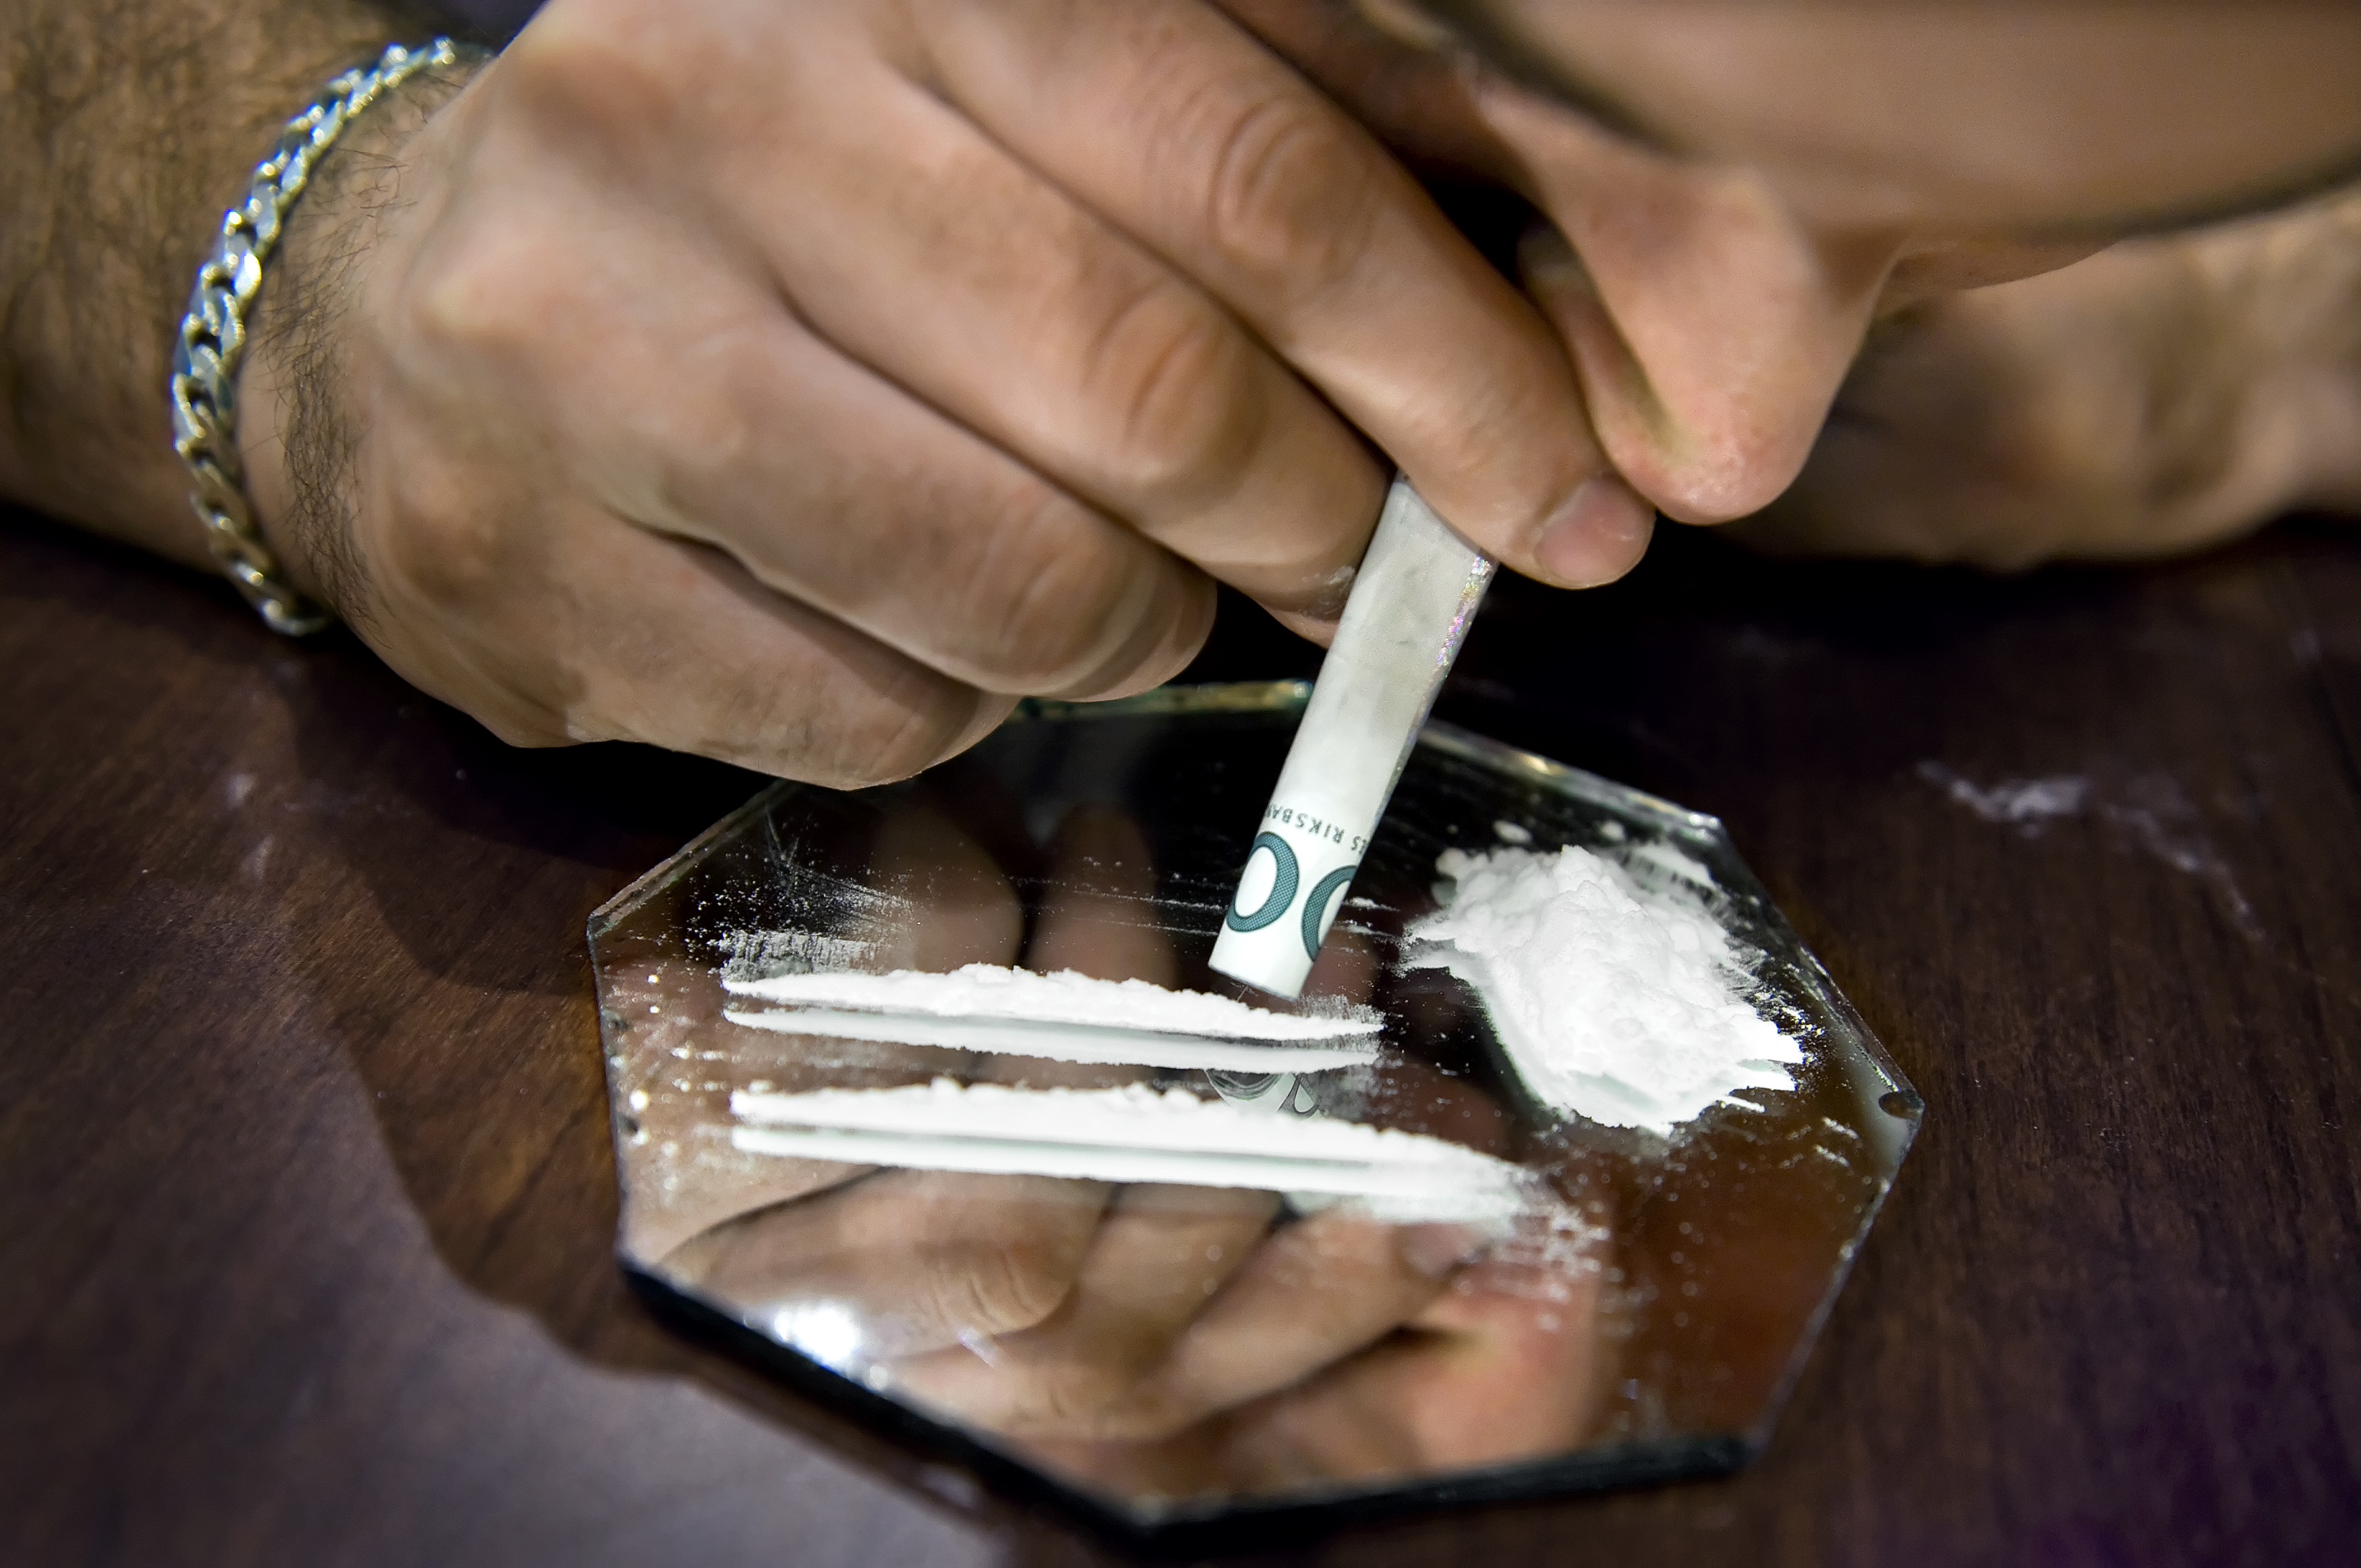 Fler tar kokain i Sverige – trefaldig ökning av patienter - Dagens Medicin